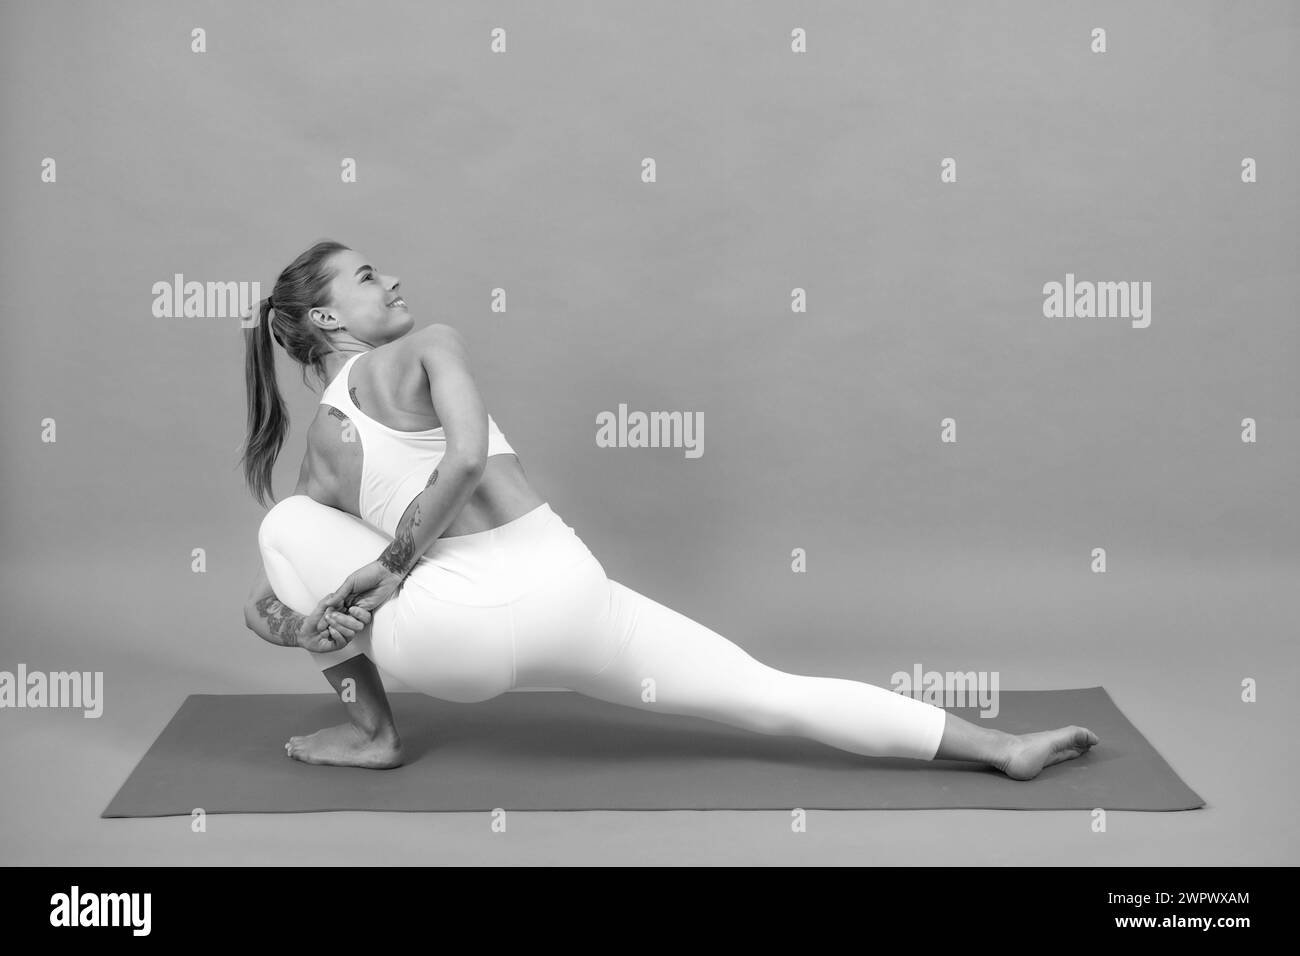 Das sportliche Mädchen hebt während der Übungen auf einer Yogamatte ihre Beine nach oben, grauer Hintergrund mit viel Platz. Stockfoto